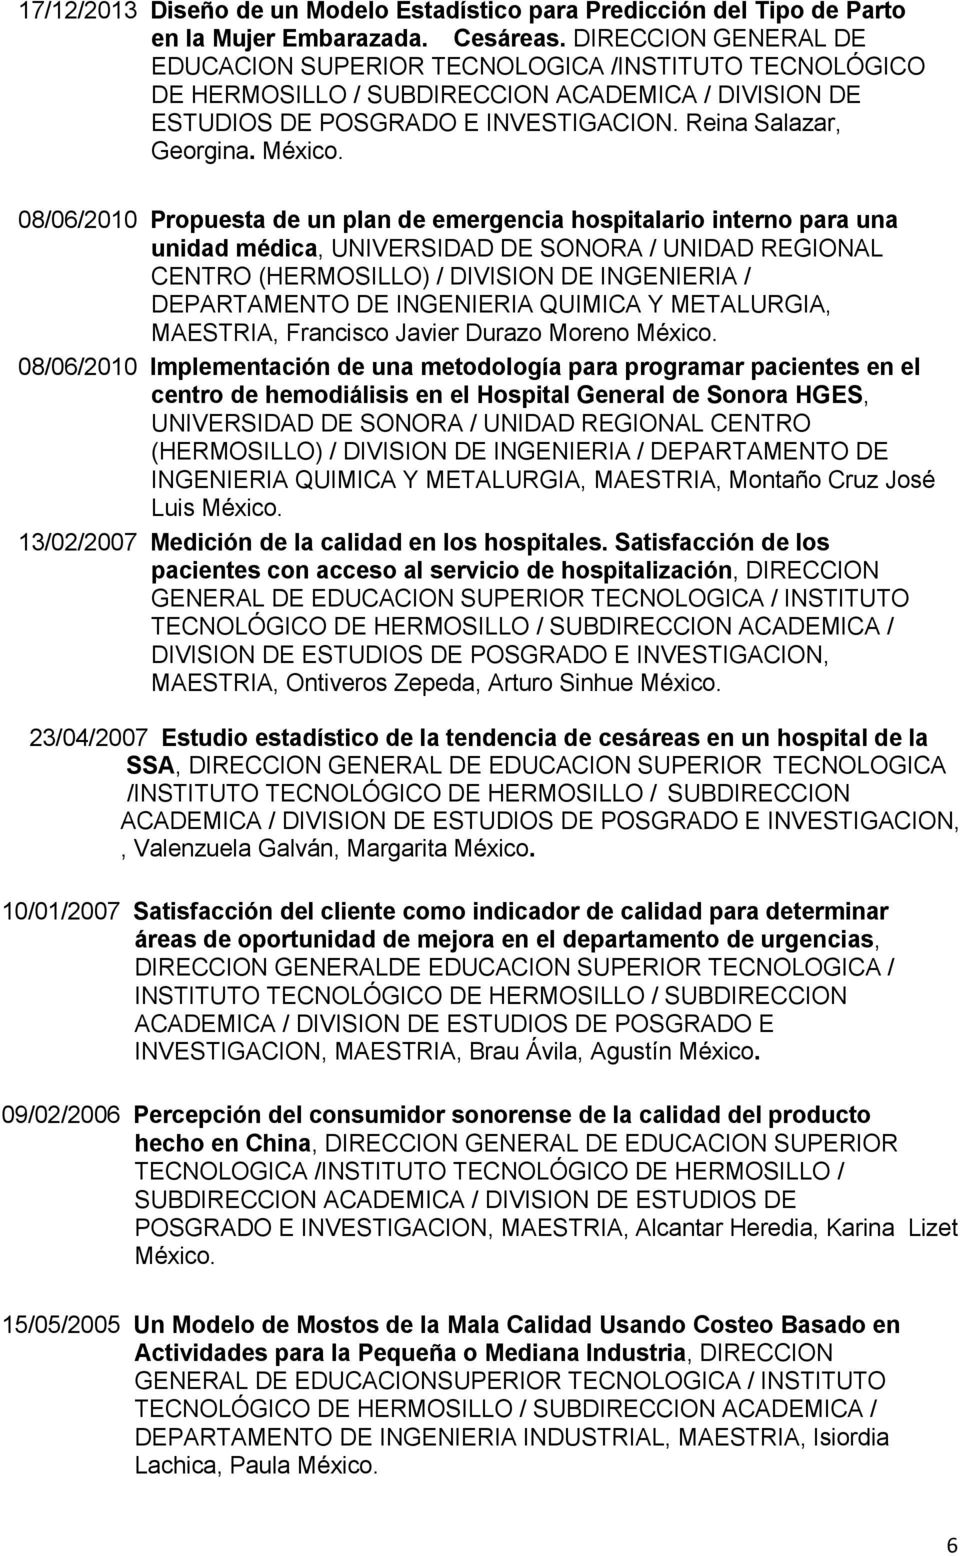 08/06/2010 Propuesta de un plan de emergencia hospitalario interno para una unidad médica, UNIVERSIDAD DE SONORA / UNIDAD REGIONAL CENTRO (HERMOSILLO) / DIVISION DE INGENIERIA / DEPARTAMENTO DE